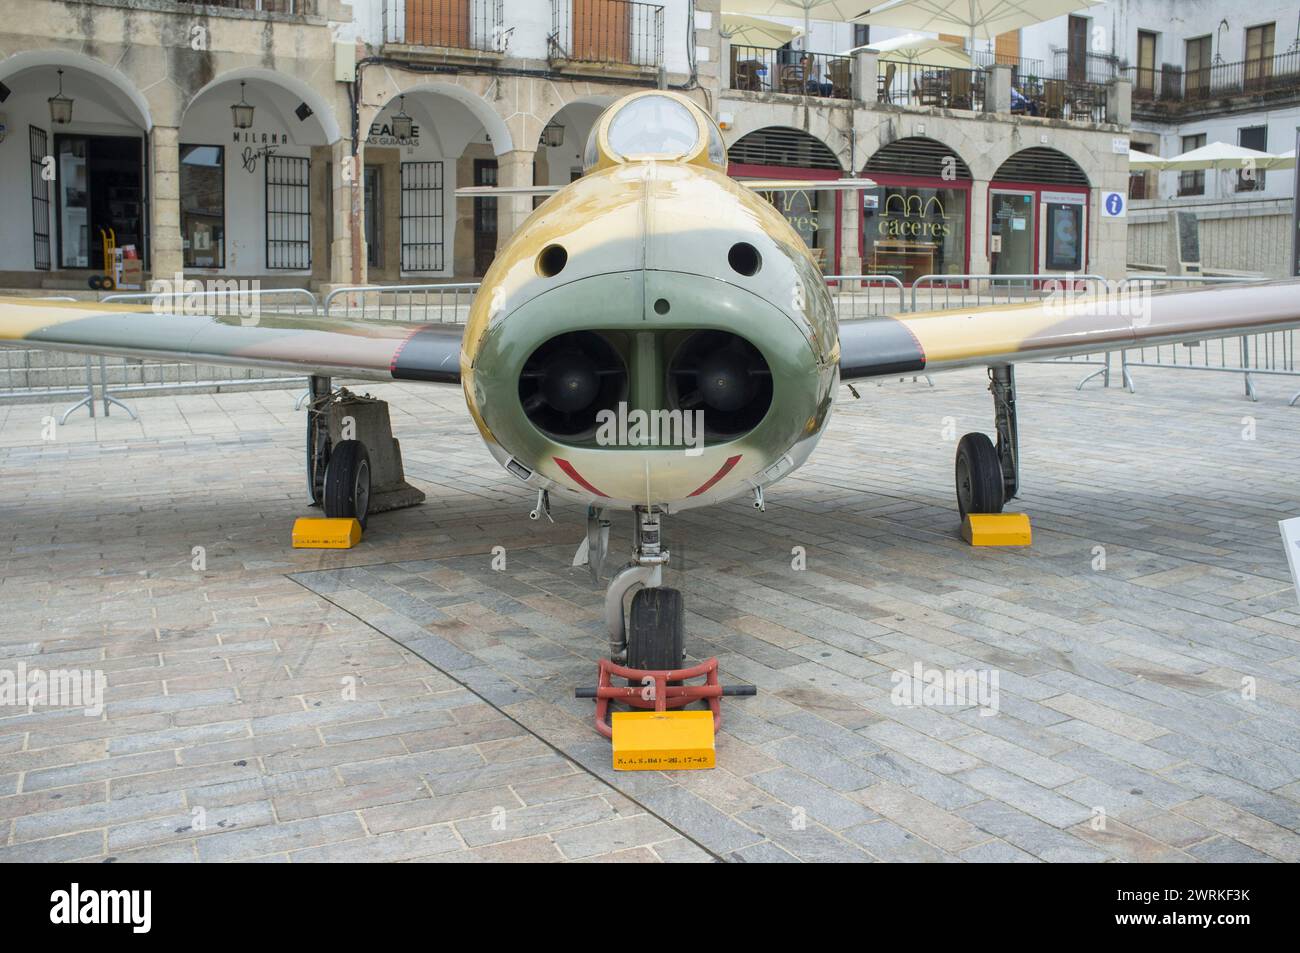 Caceres, Espagne - 27 mai 2021 : Hispano HA-200 Saeta. Exposition de l'aviation militaire espagnole, place principale de Caceres, Espagne Banque D'Images